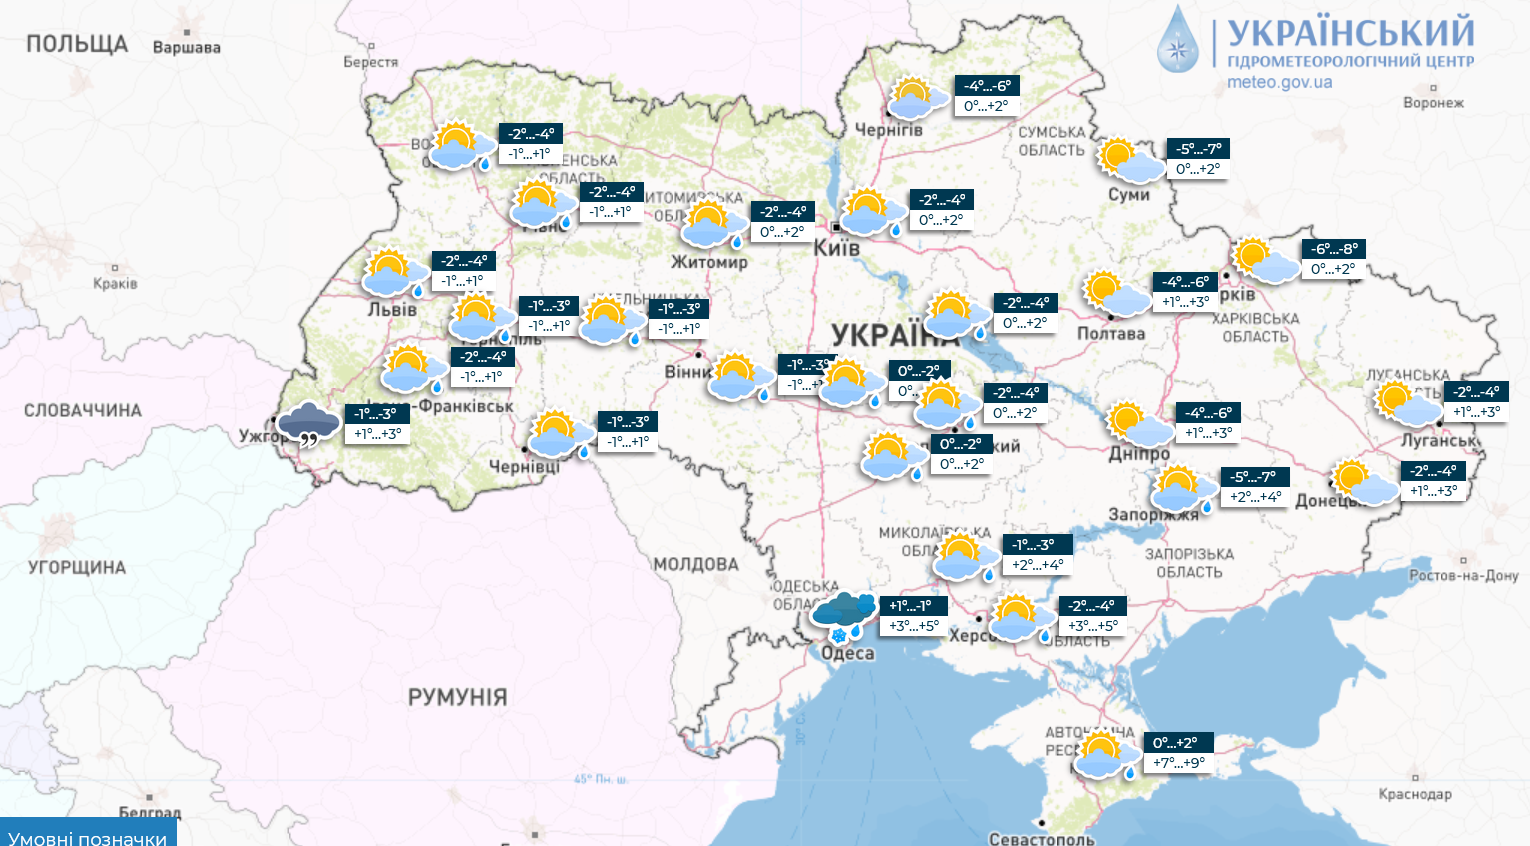 Синоптики предупредили украинцев об ухудшении погоды: подробный прогноз до конца недели. Карта